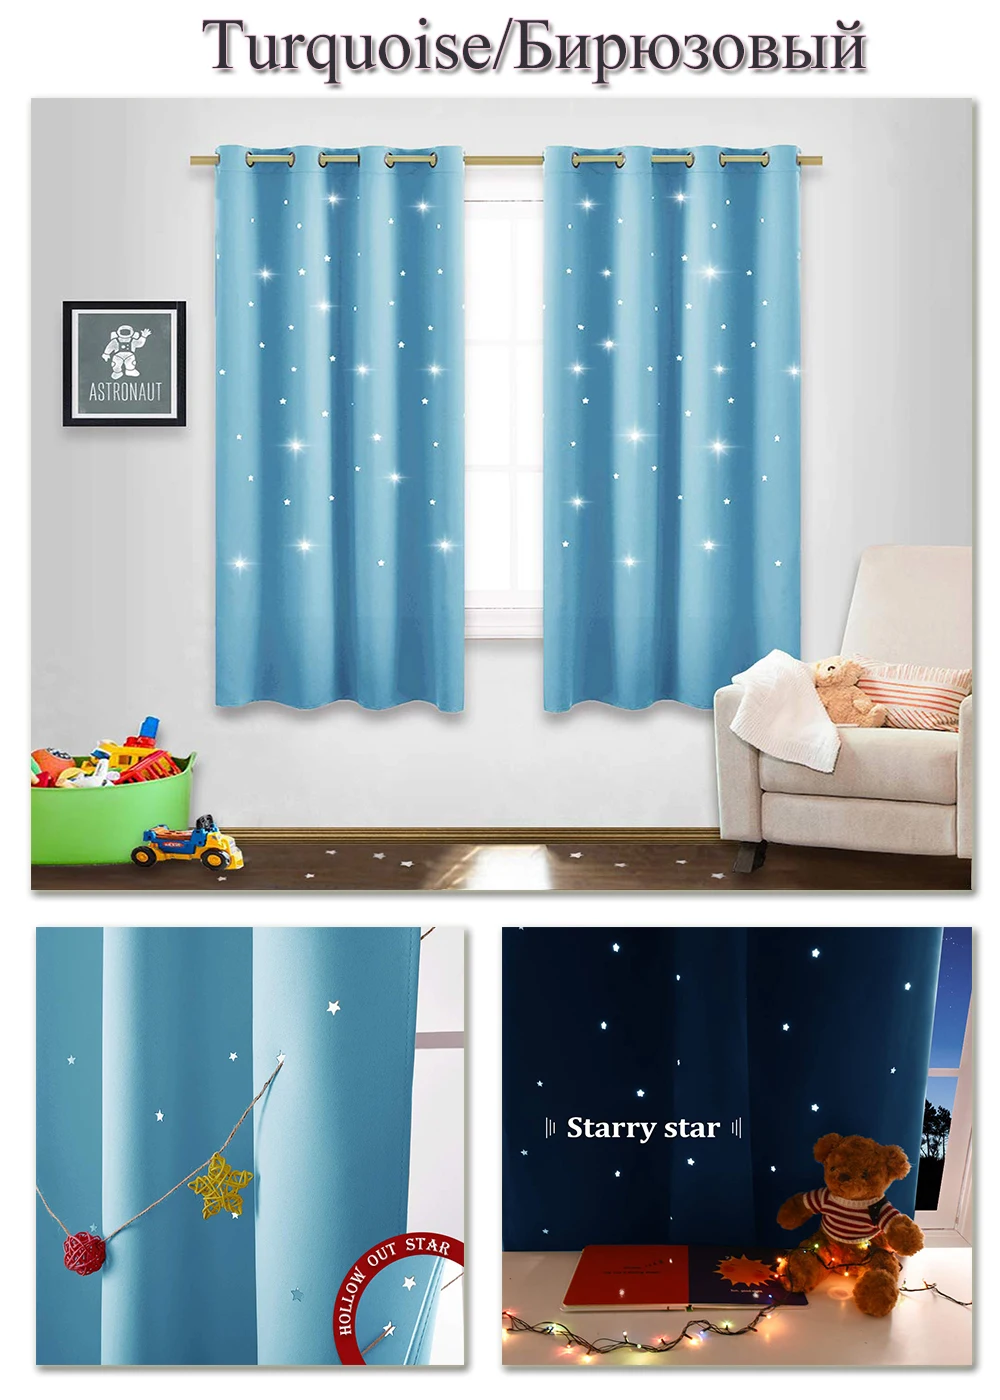 NICETOWN, 1 шт., затемненная занавеска с вырезами в виде звезд, полиэстер, детская, милая драпировка для окна, для декора гостиной, детская комната